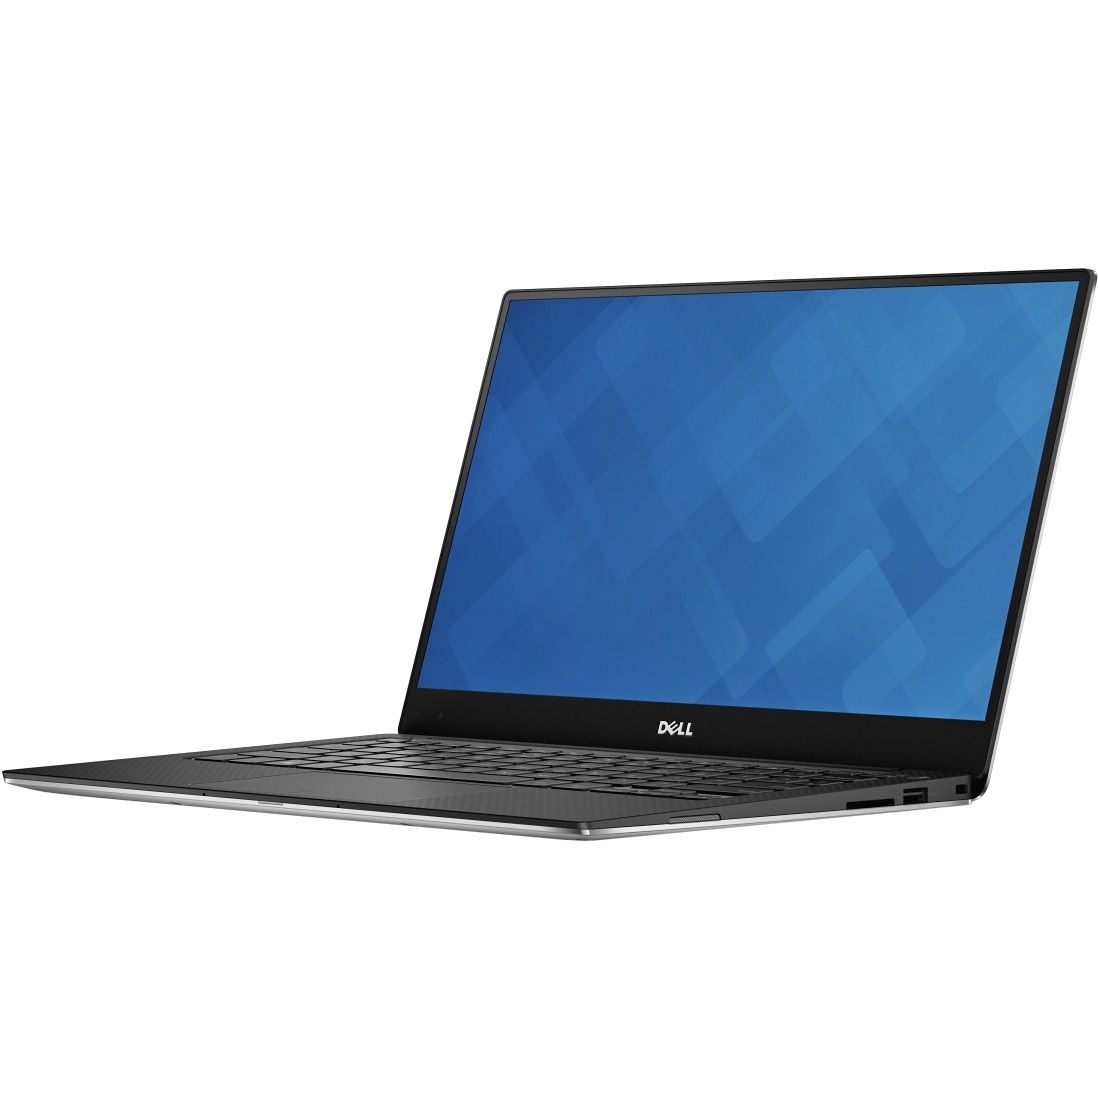 Dell XPS 13 (2015) - зображення 1